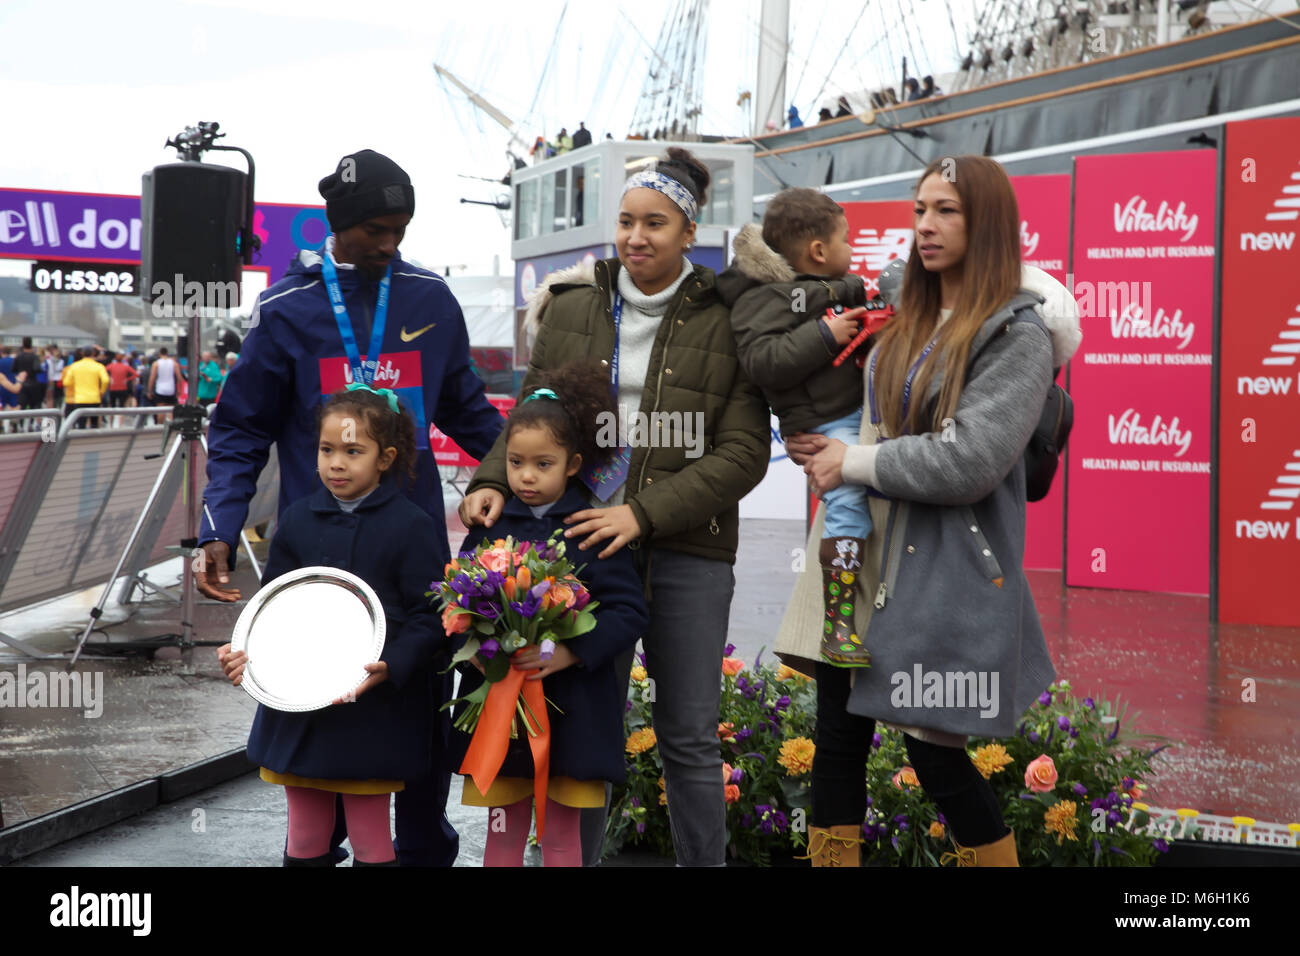 Greenwich, Royaume-Uni, 4 mars 2018,Mo Farah a remporté la vitalité demi qui a terminé à Greenwich après avoir terminé le demi-marathon de London Bridge. Larby Keith crédit/ Alamy Live News Banque D'Images